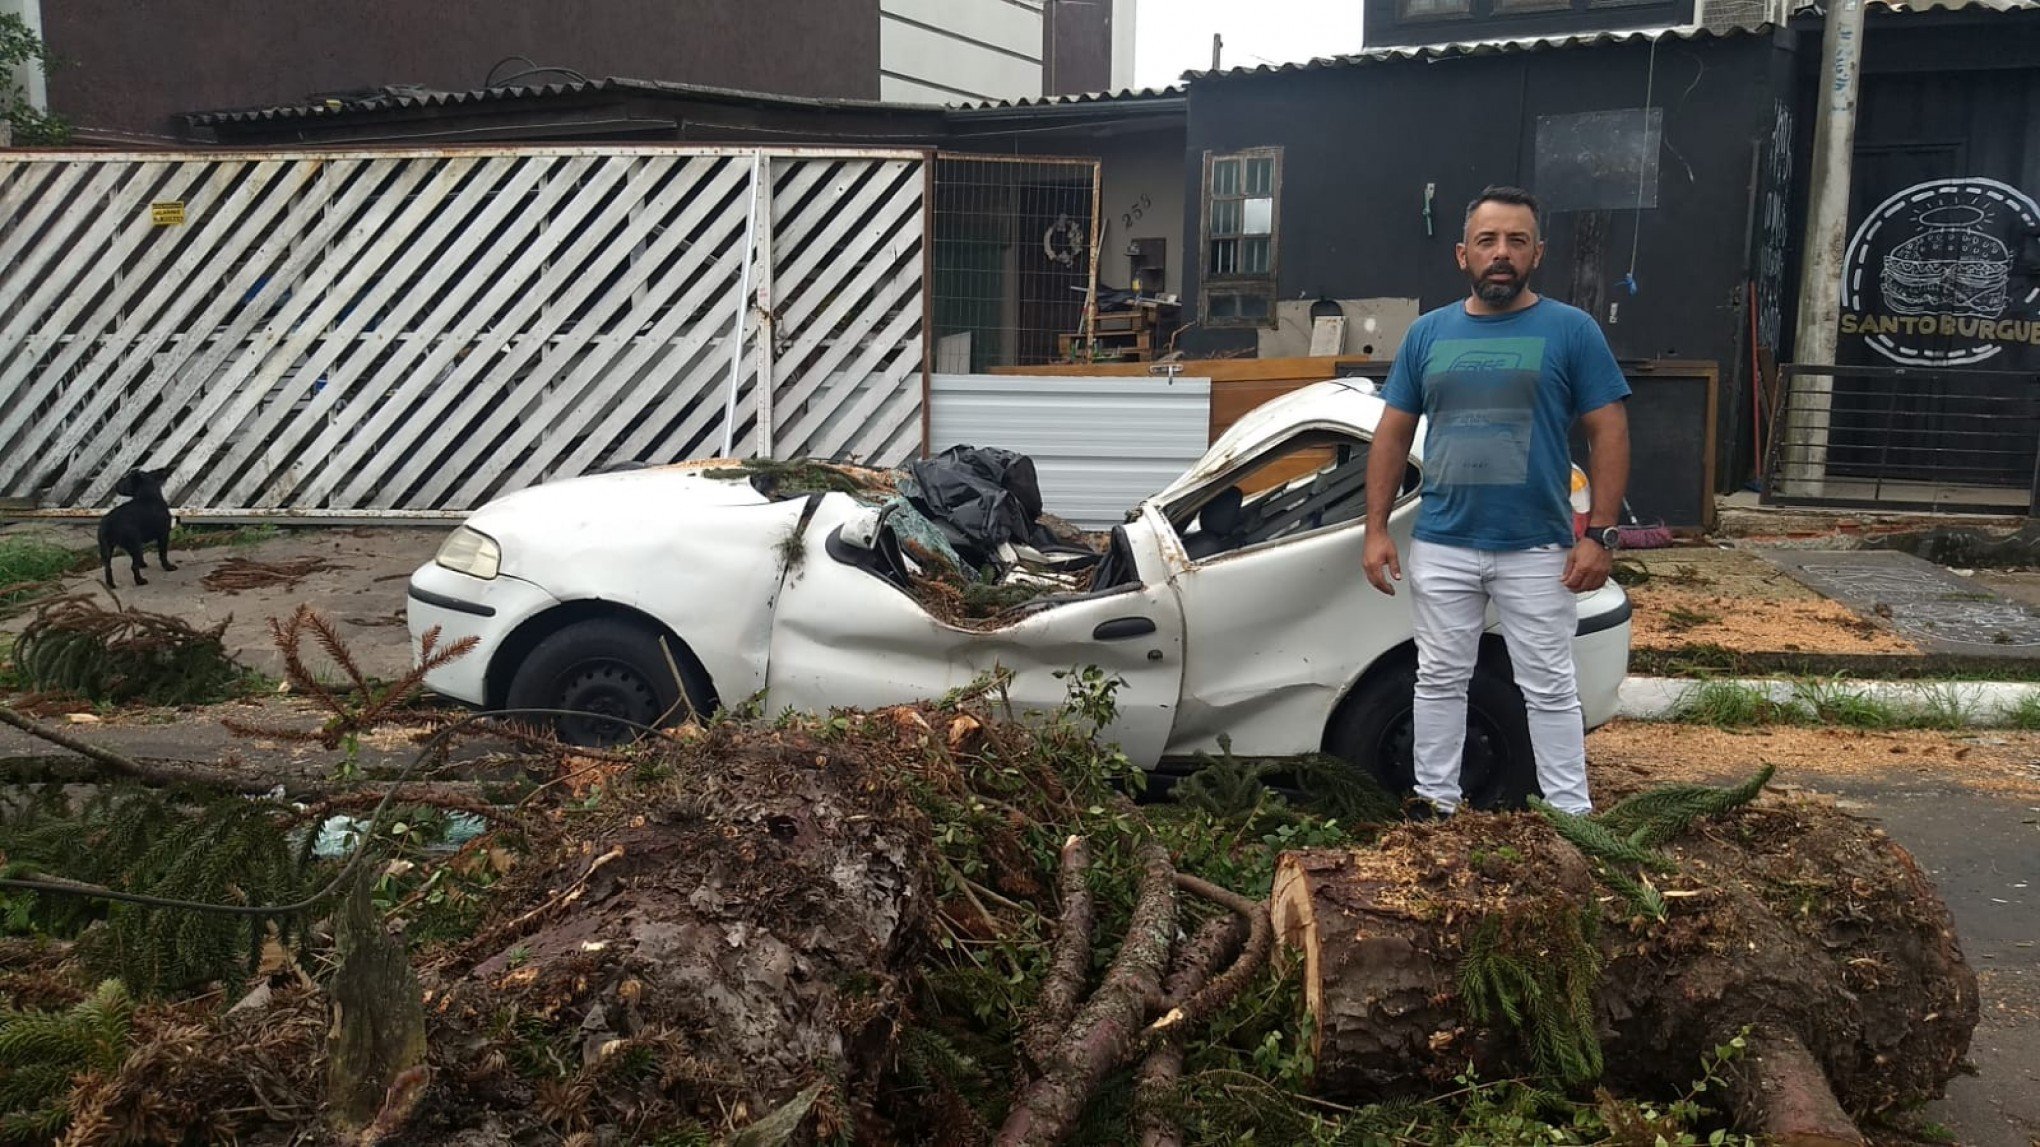 VÍDEO: Carro é atingido por tronco de 9 toneladas em Canoas. "Nasci de novo", diz morador